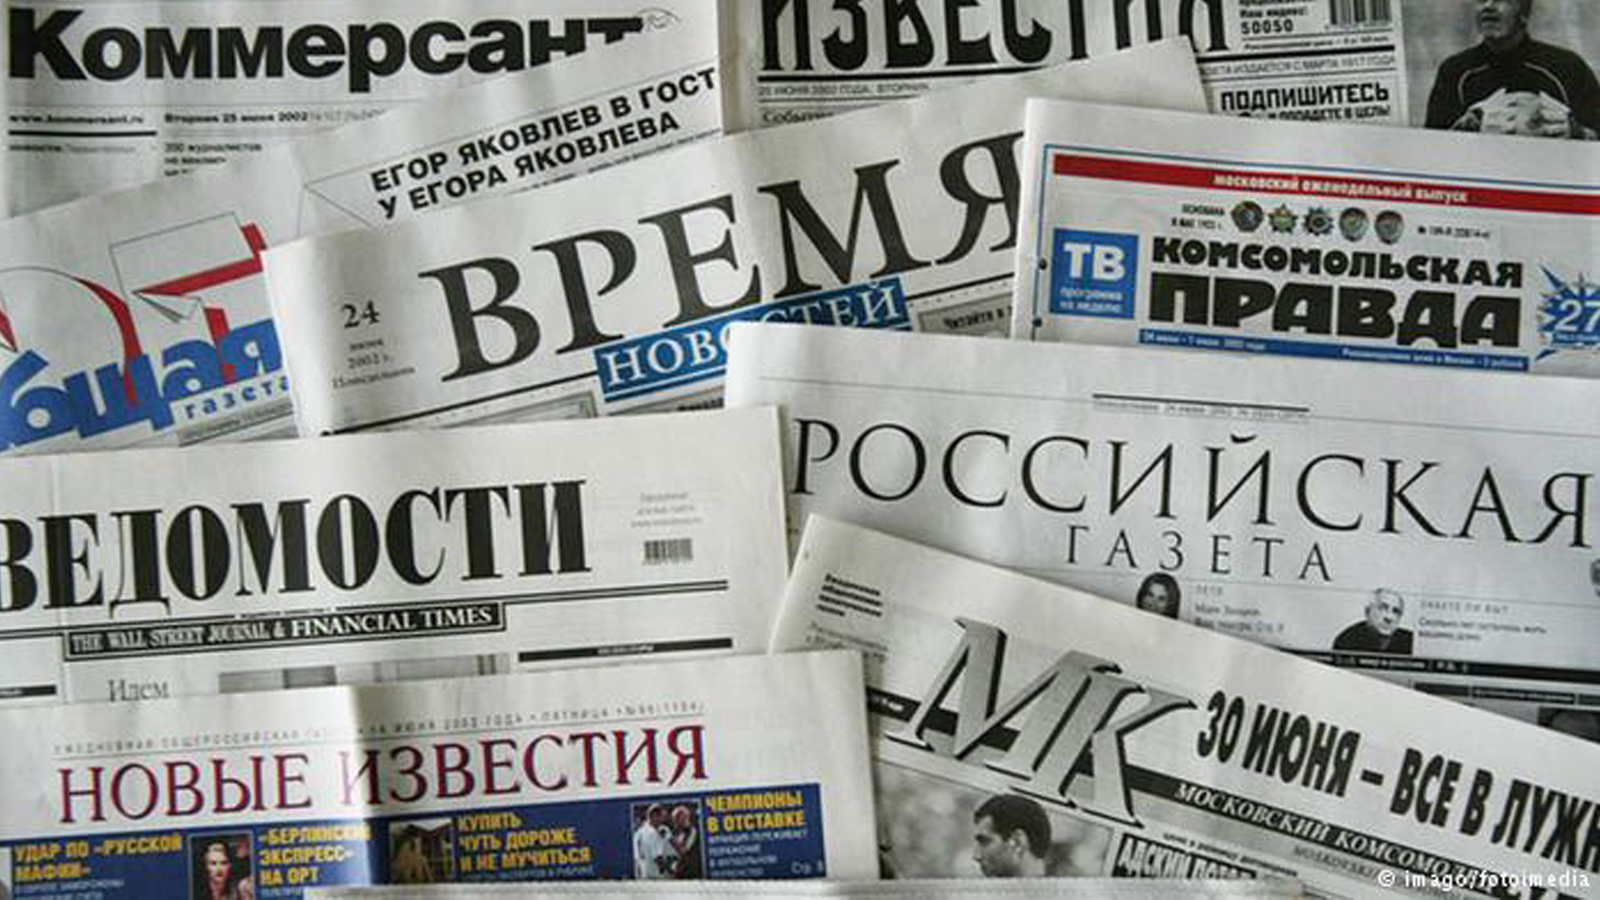 "قيصر النفط" الروسي وتركيع الإعلام